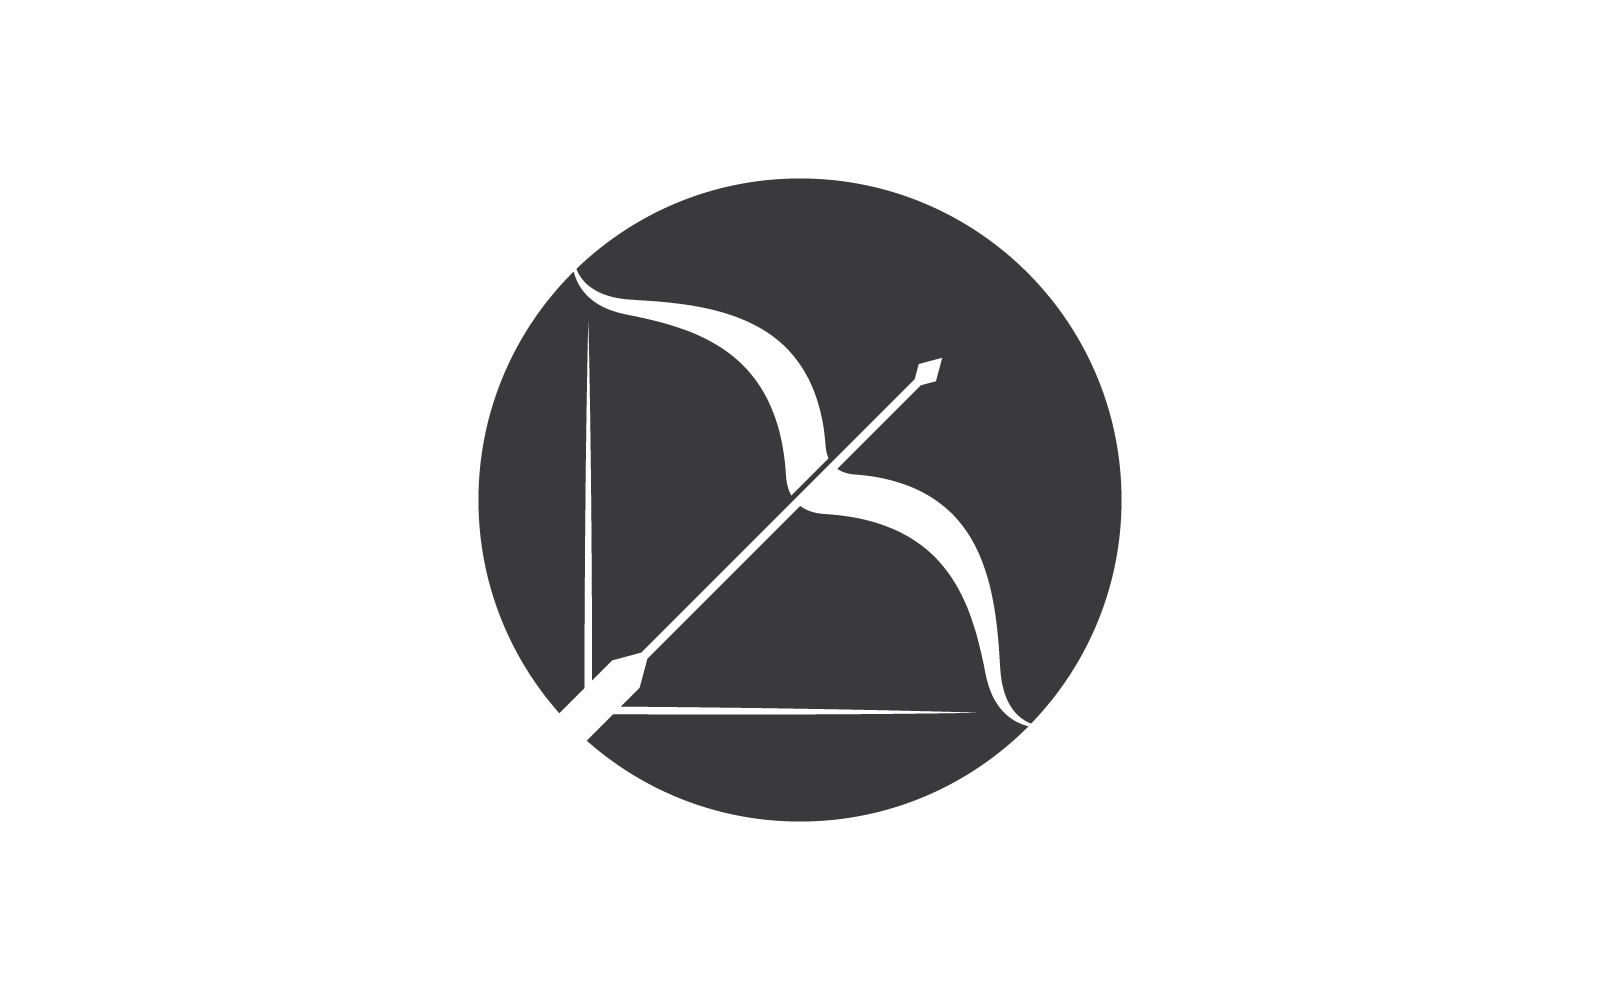 Vorlage für die Vektorillustration des Bogenschießen-Logos